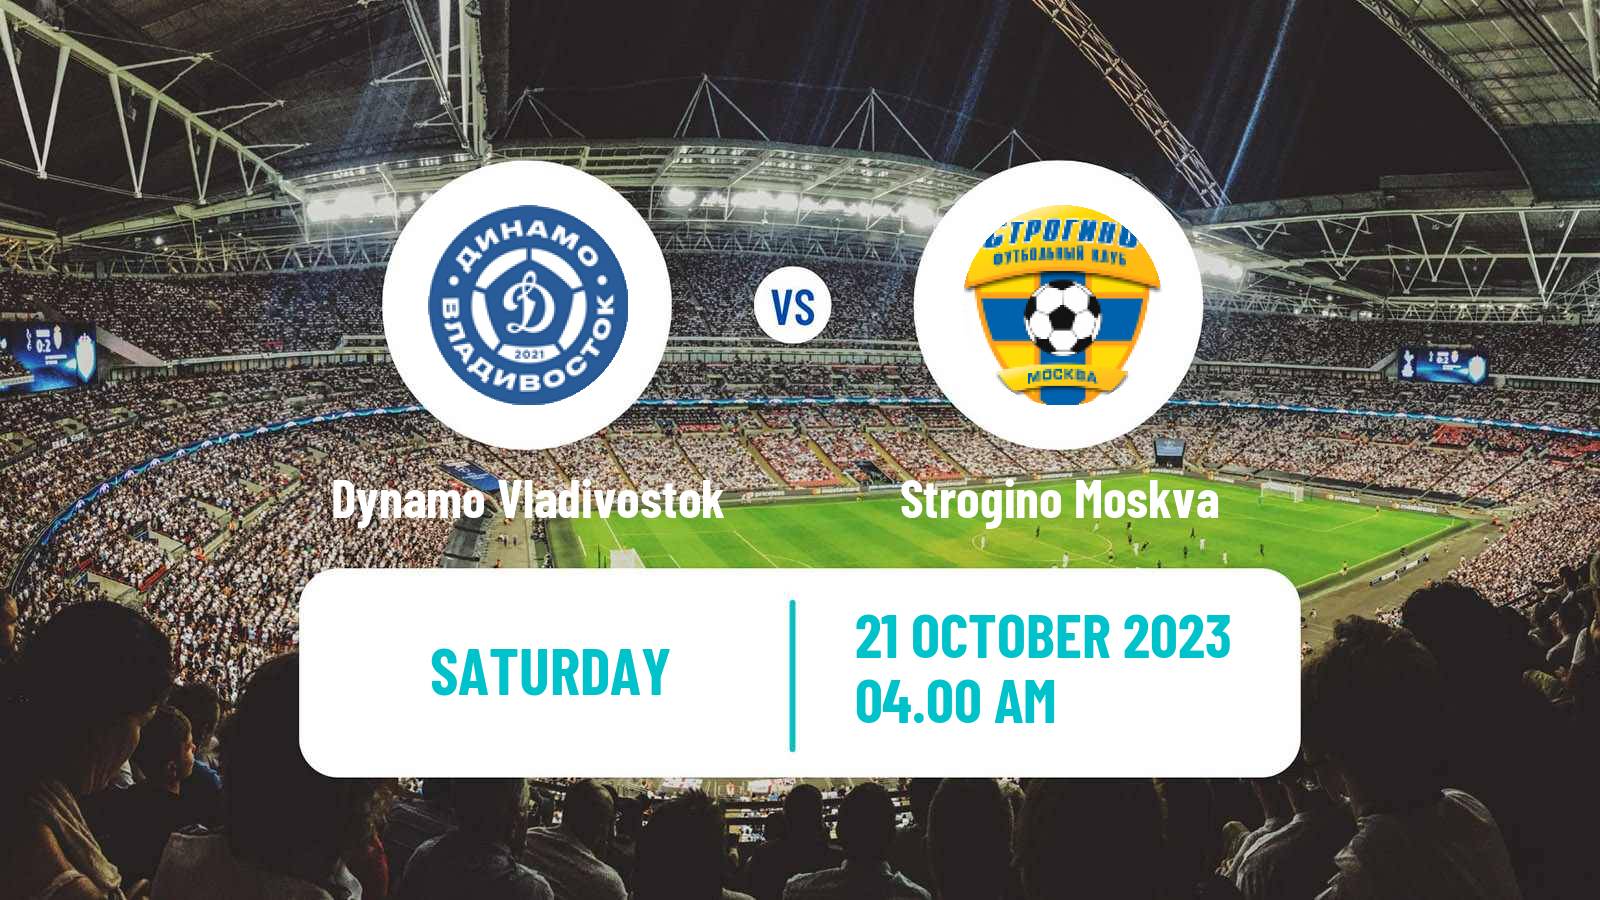 Soccer FNL 2 Division B Group 3 Dynamo Vladivostok - Strogino Moskva